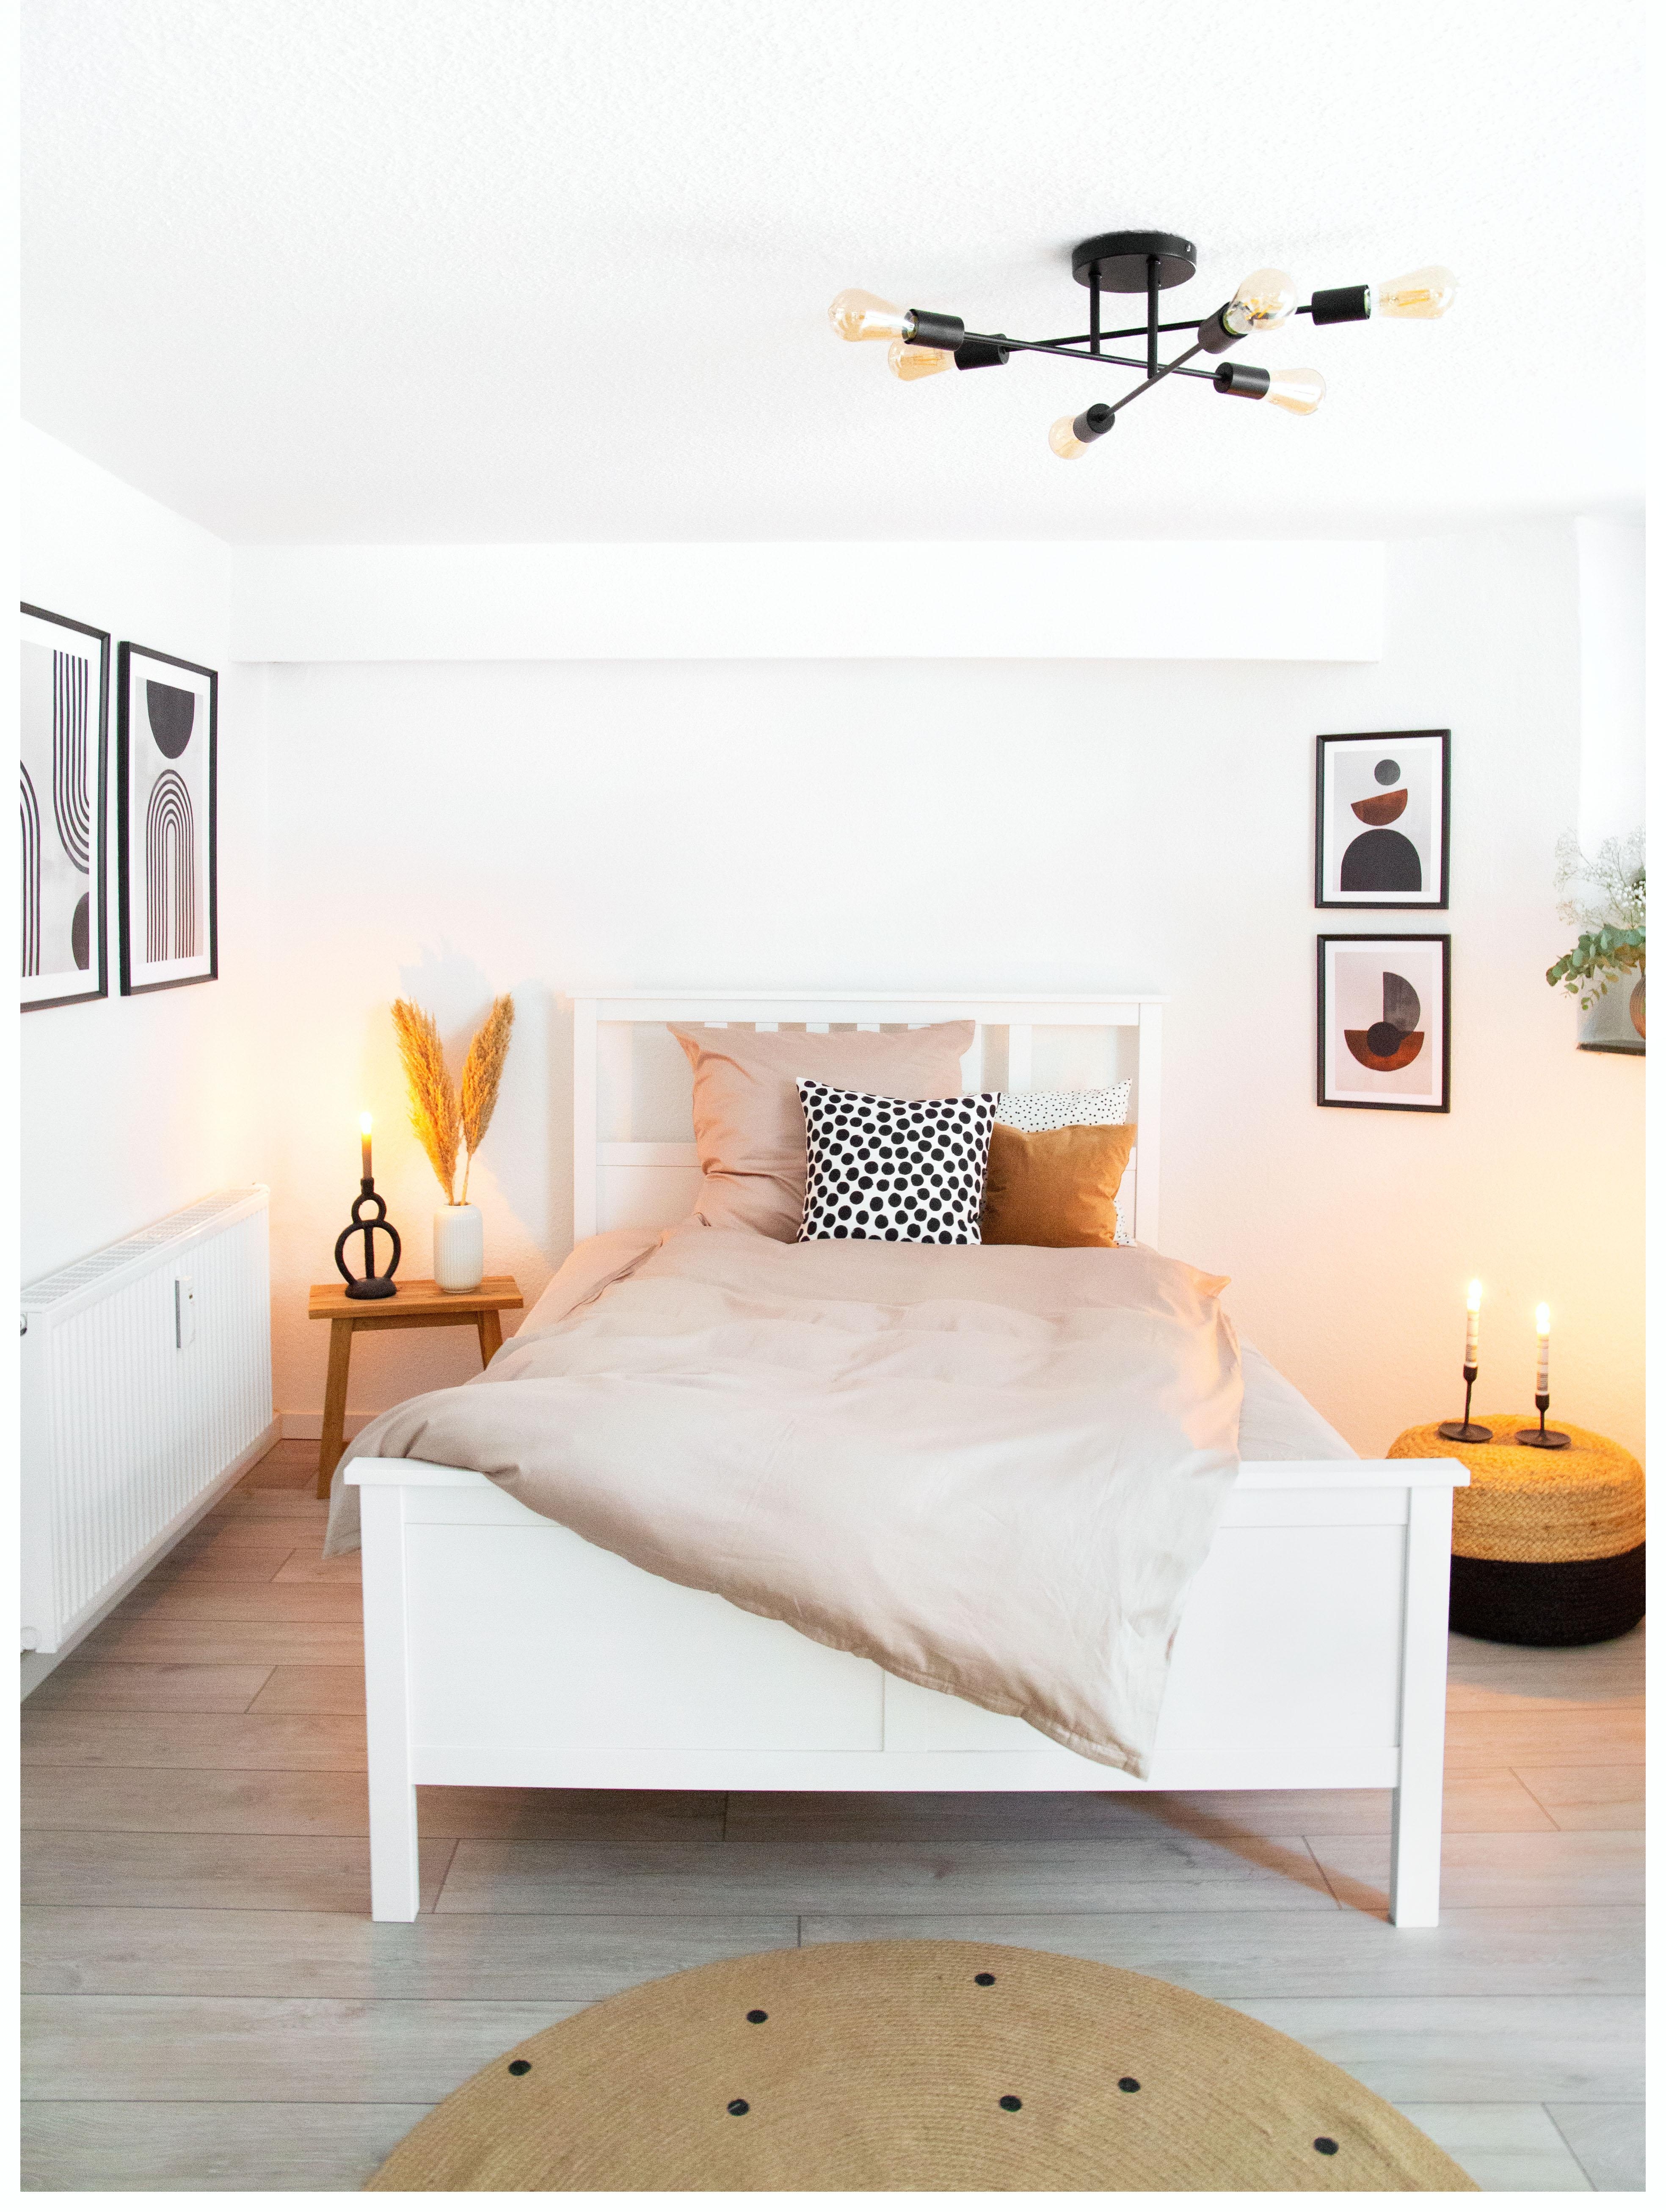 Mein Schlafzimmer - #livingchallange #schlafzimmer #scandi #skandinavisch #deko #couch #cozy 